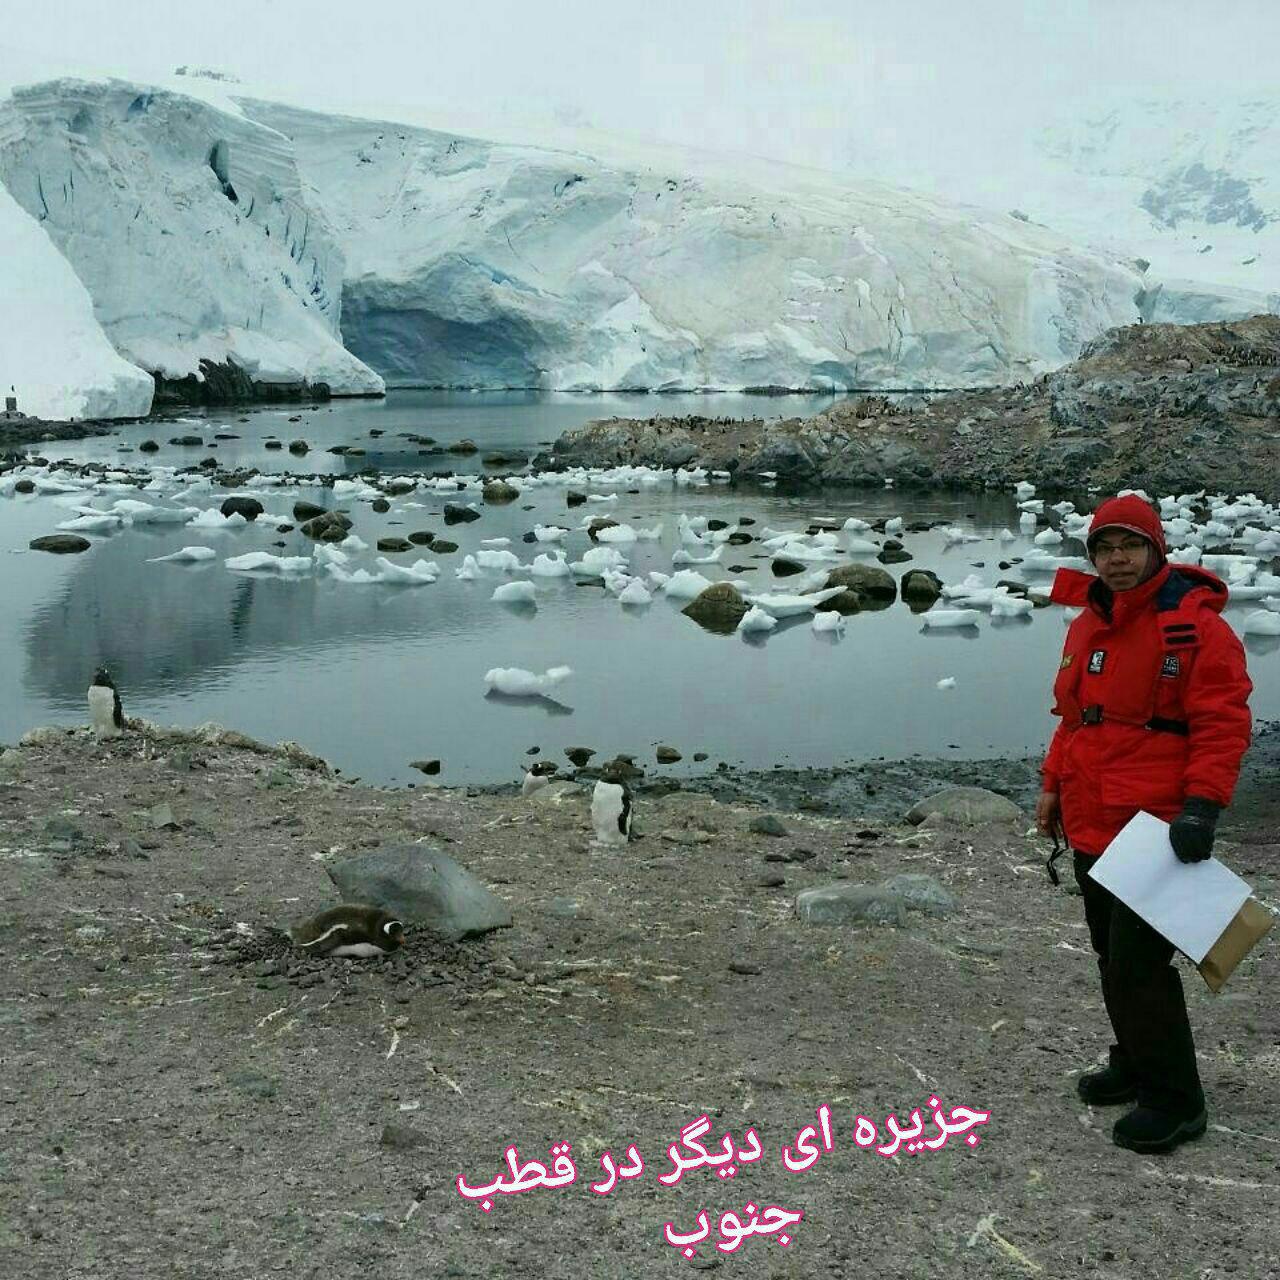 خاطرات سومین زن ایرانی از سفر به قطب جنوب/ از تکانهای شدید کشتی تا بازار چینی ها که در قطب هم گرم بود